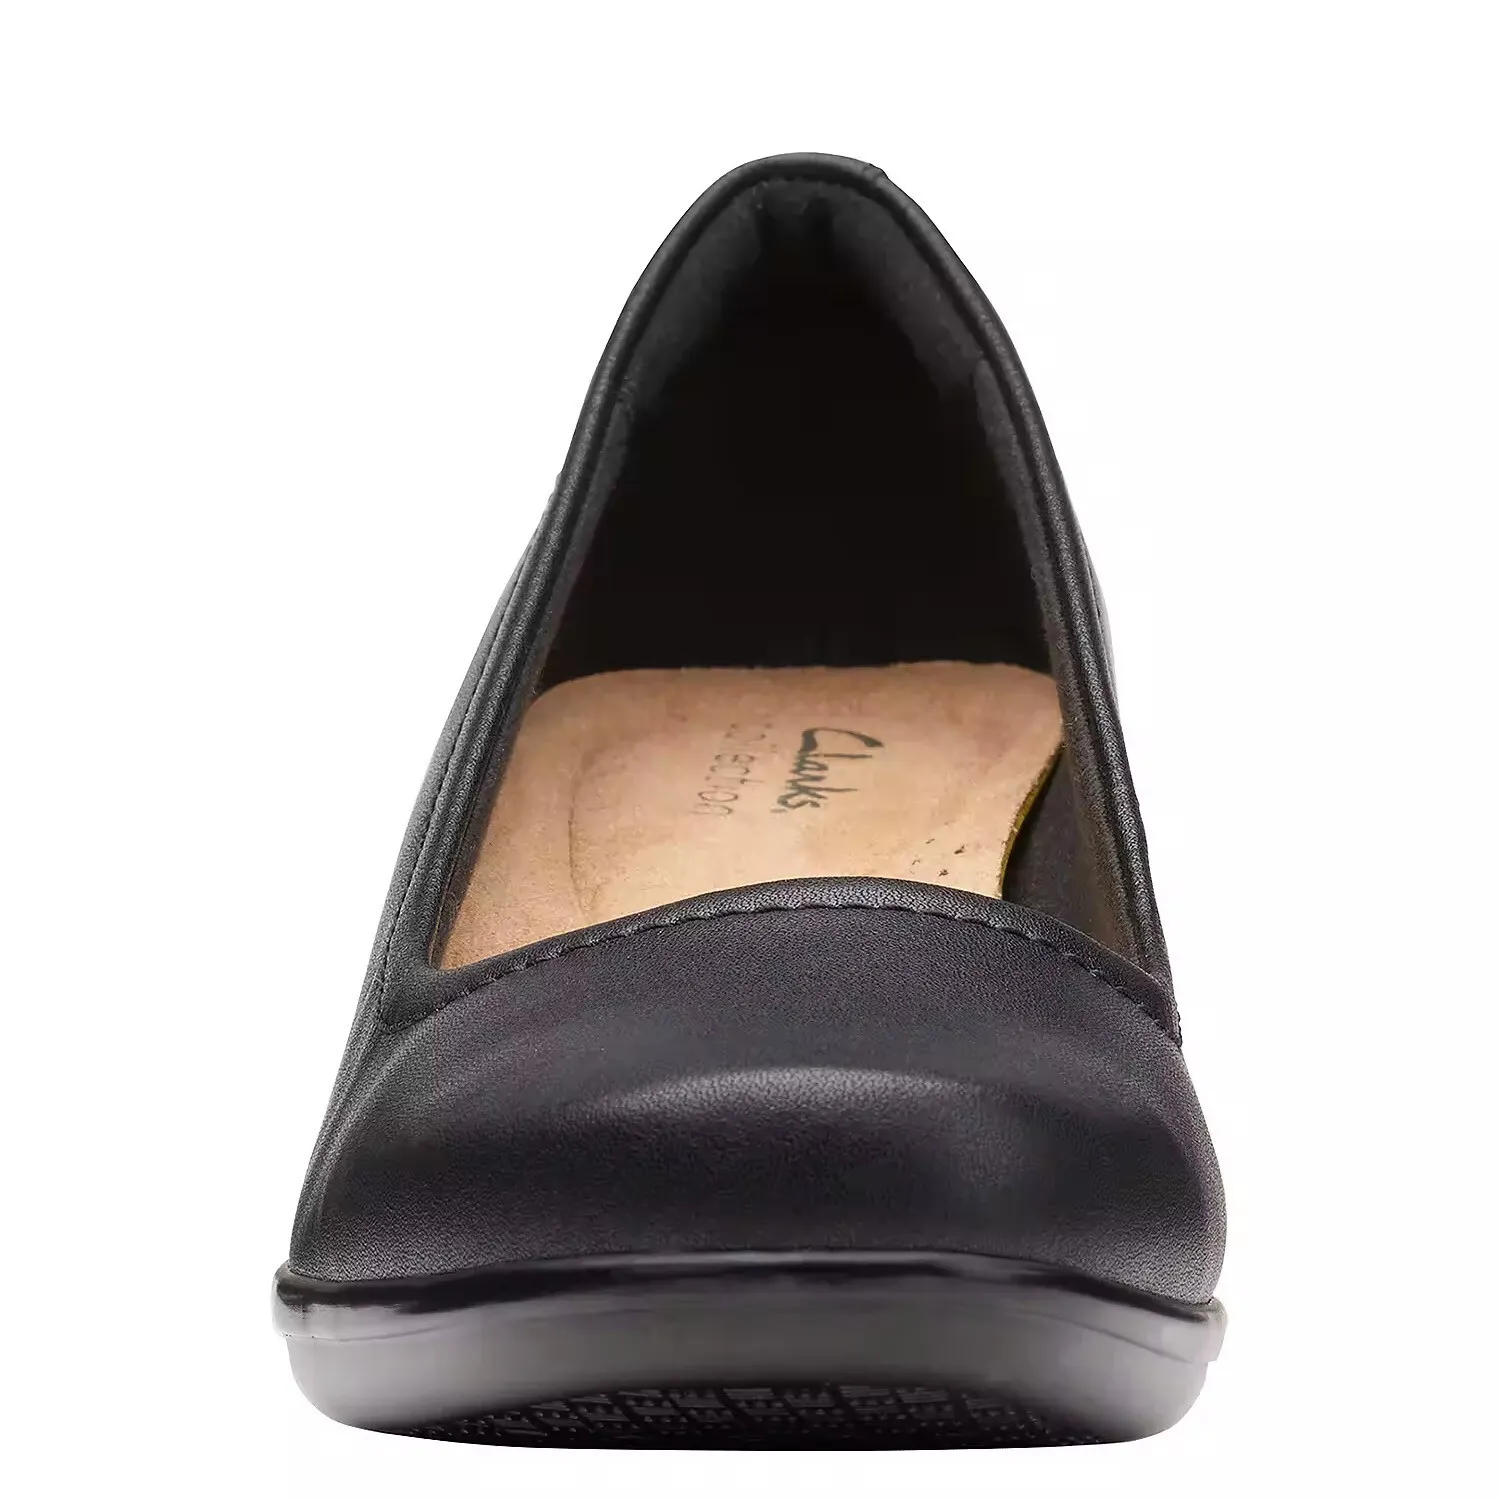 Женские туфли-лодочки Clarks, черные, цвет черный, размер 37.5 - фото 5